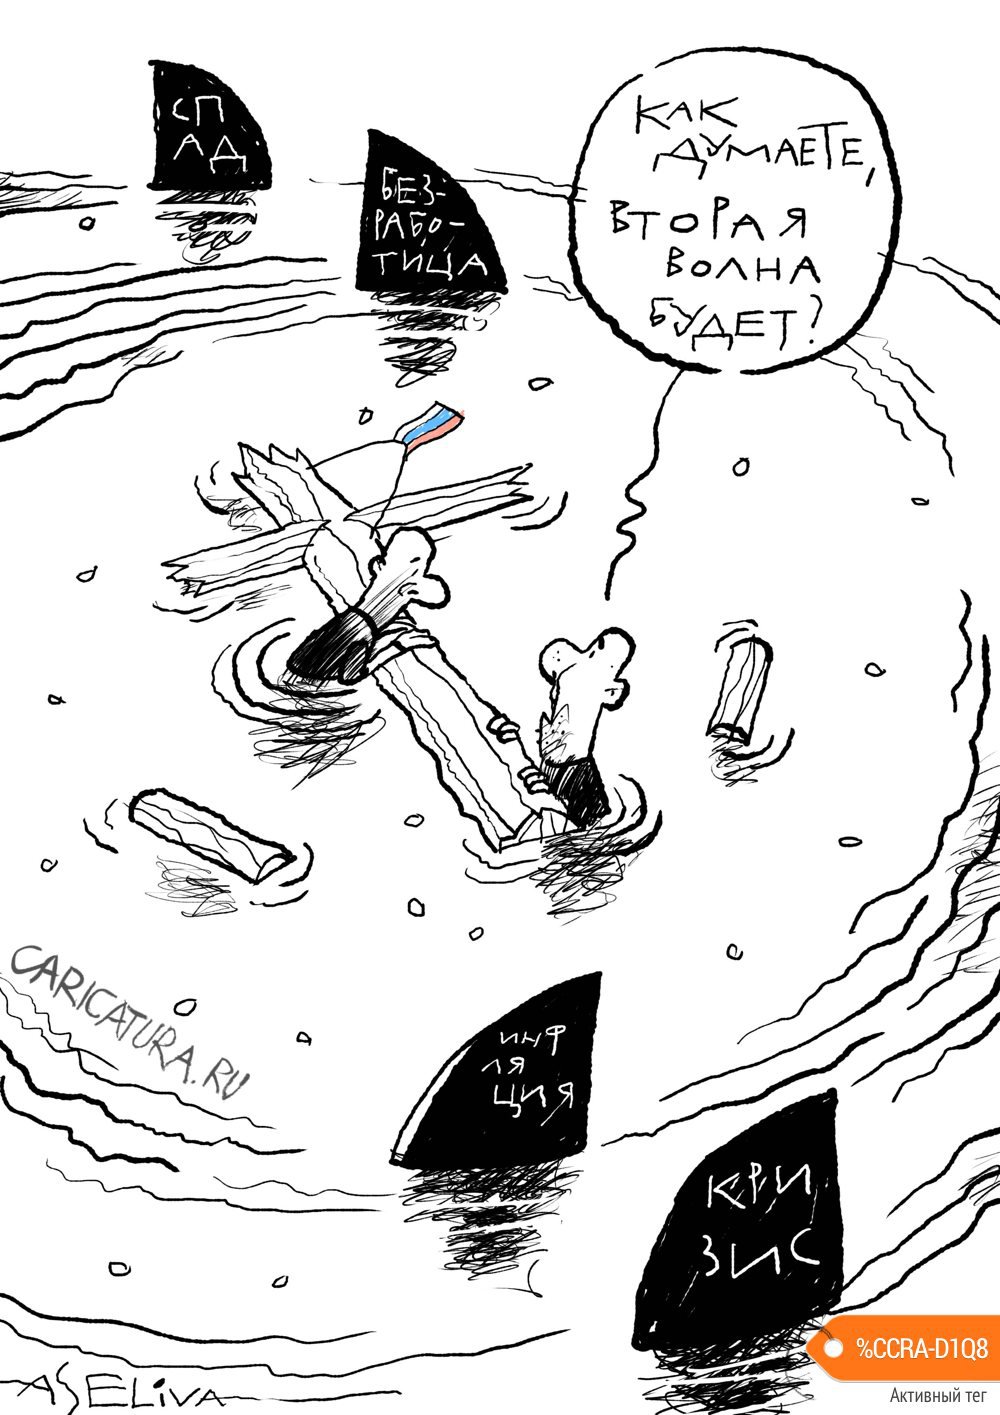 Карикатура "Вторая волна", Андрей Селиванов